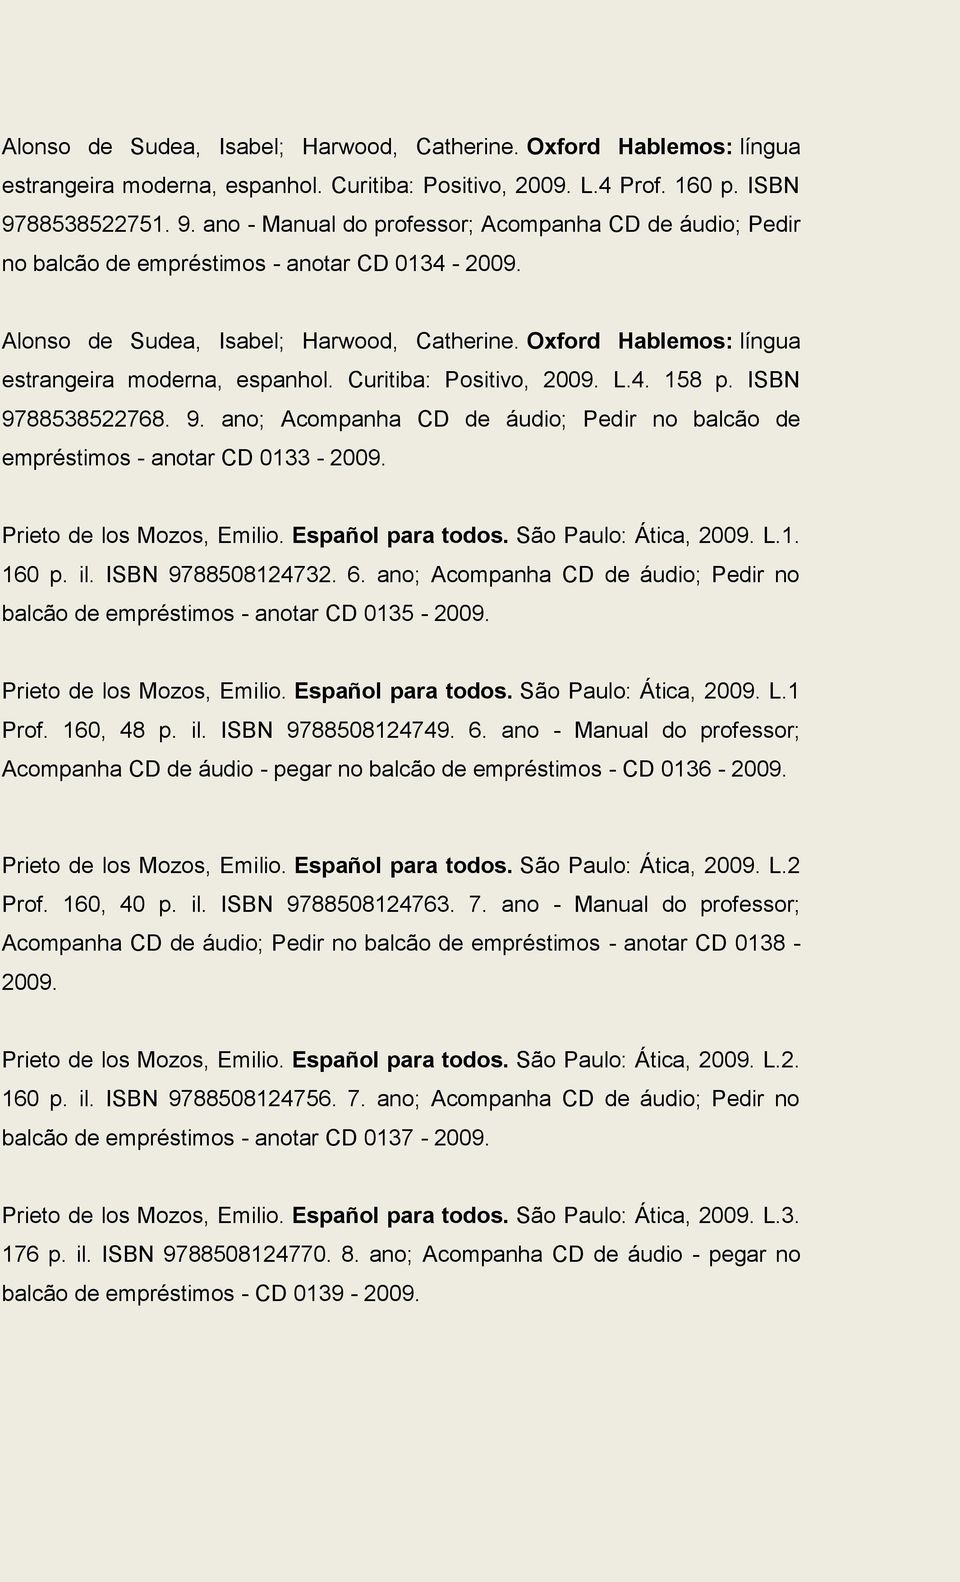 Oxford Hablemos: língua estrangeira moderna, espanhol. Curitiba: Positivo, 2009. L.4. 158 p. ISBN 9788538522768. 9. ano; Acompanha CD de áudio; Pedir no balcão de empréstimos - anotar CD 0133-2009.